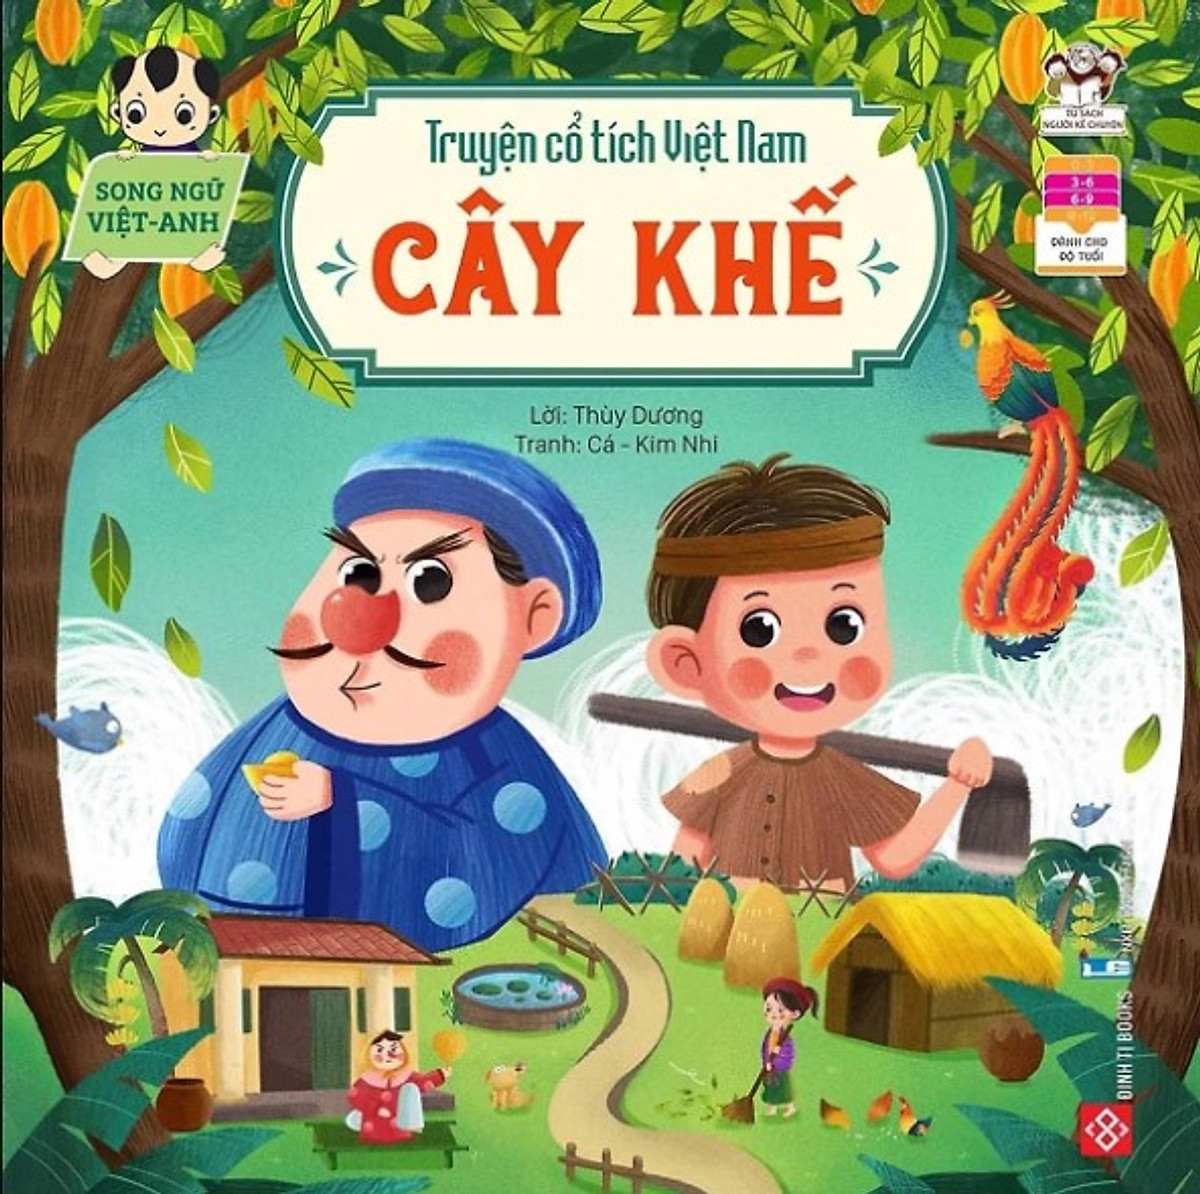 Mua Truyện cổ tích Việt Nam (Song ngữ Việt - Anh) - Cây khế tại Cá Chép  Bookstore